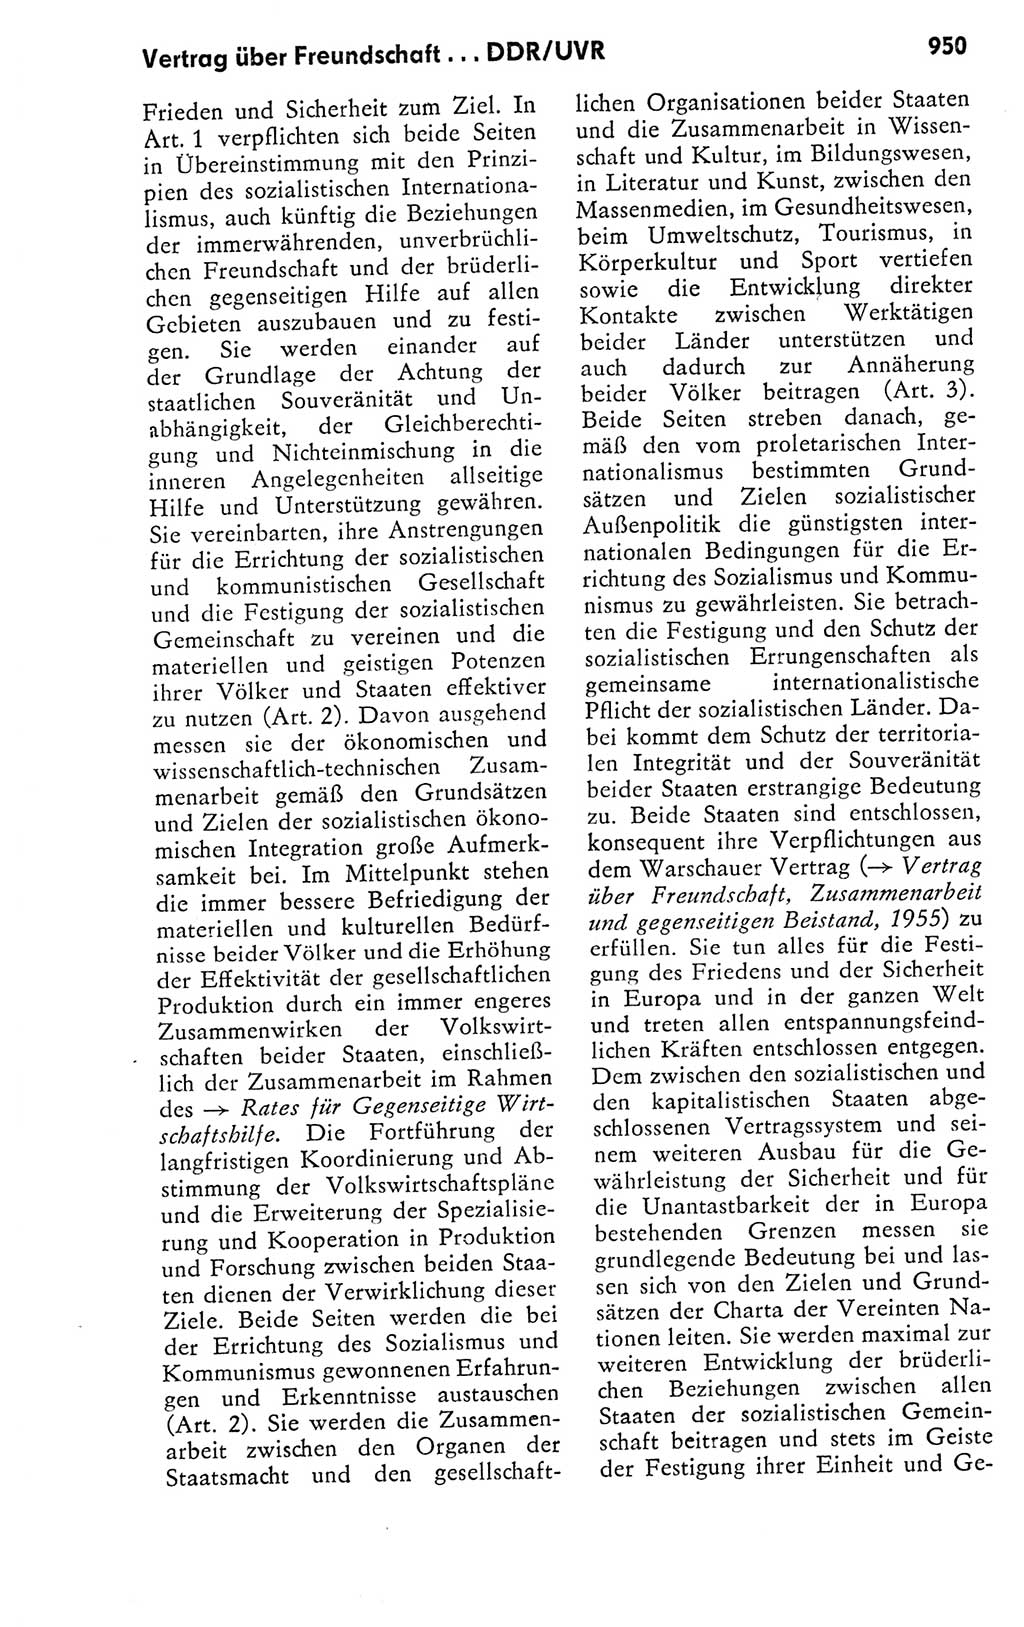 Kleines politisches Wörterbuch [Deutsche Demokratische Republik (DDR)] 1978, Seite 950 (Kl. pol. Wb. DDR 1978, S. 950)